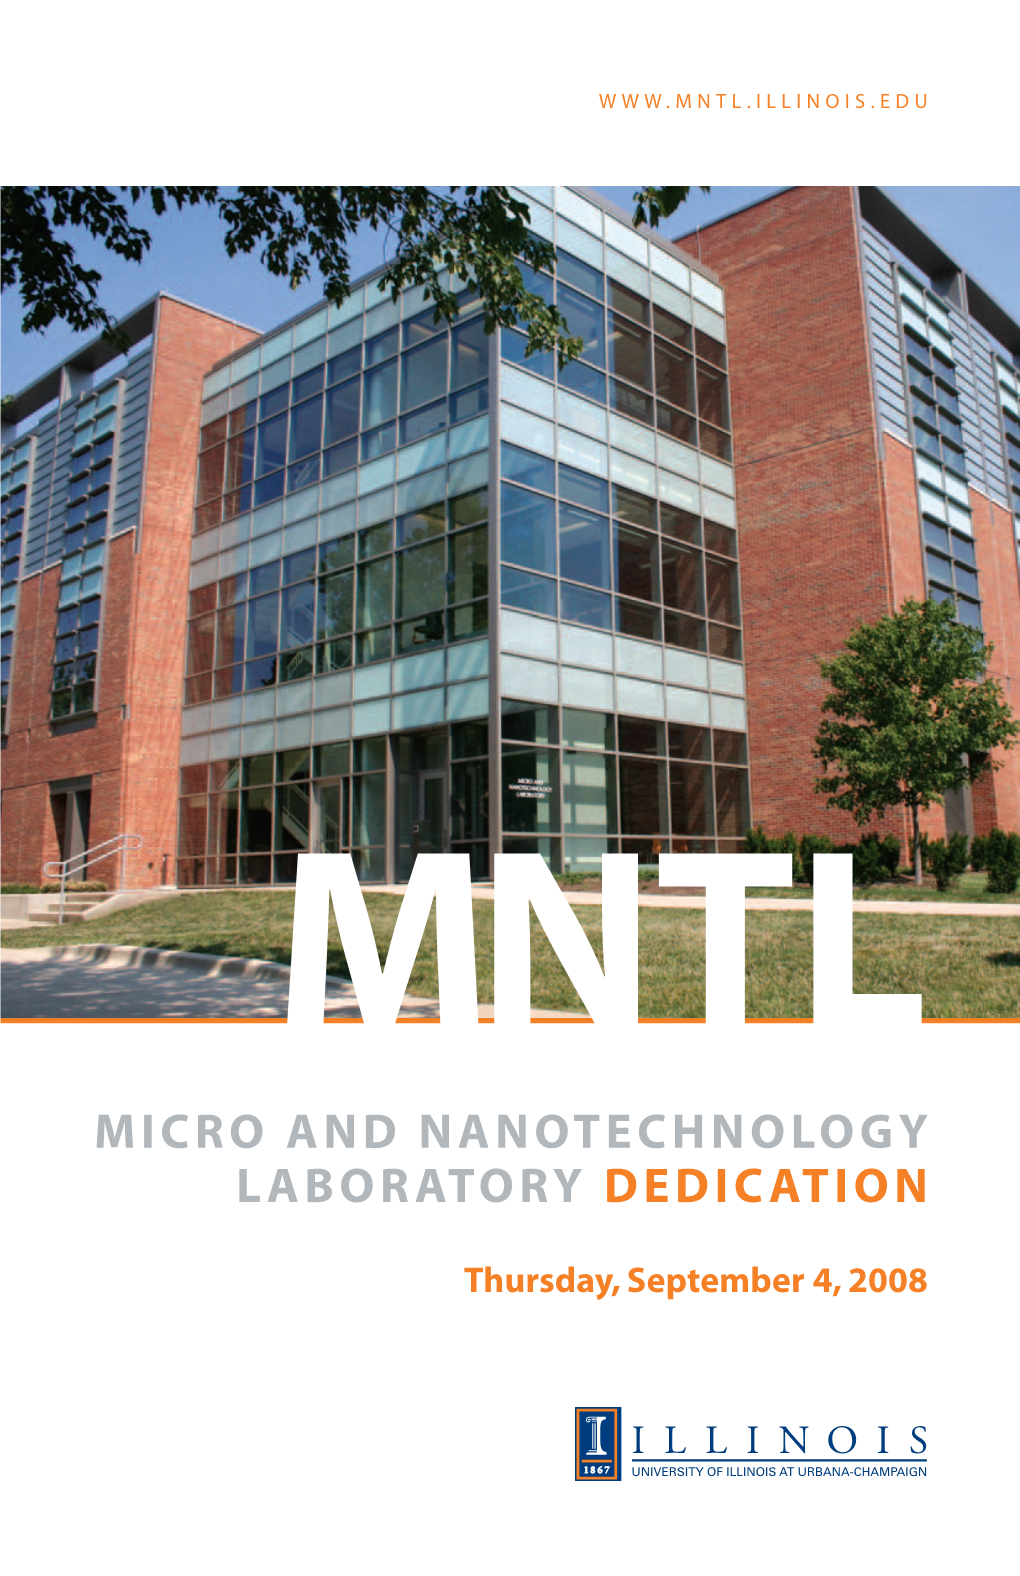 Micro and Nanotechnology Laboratory Dedication